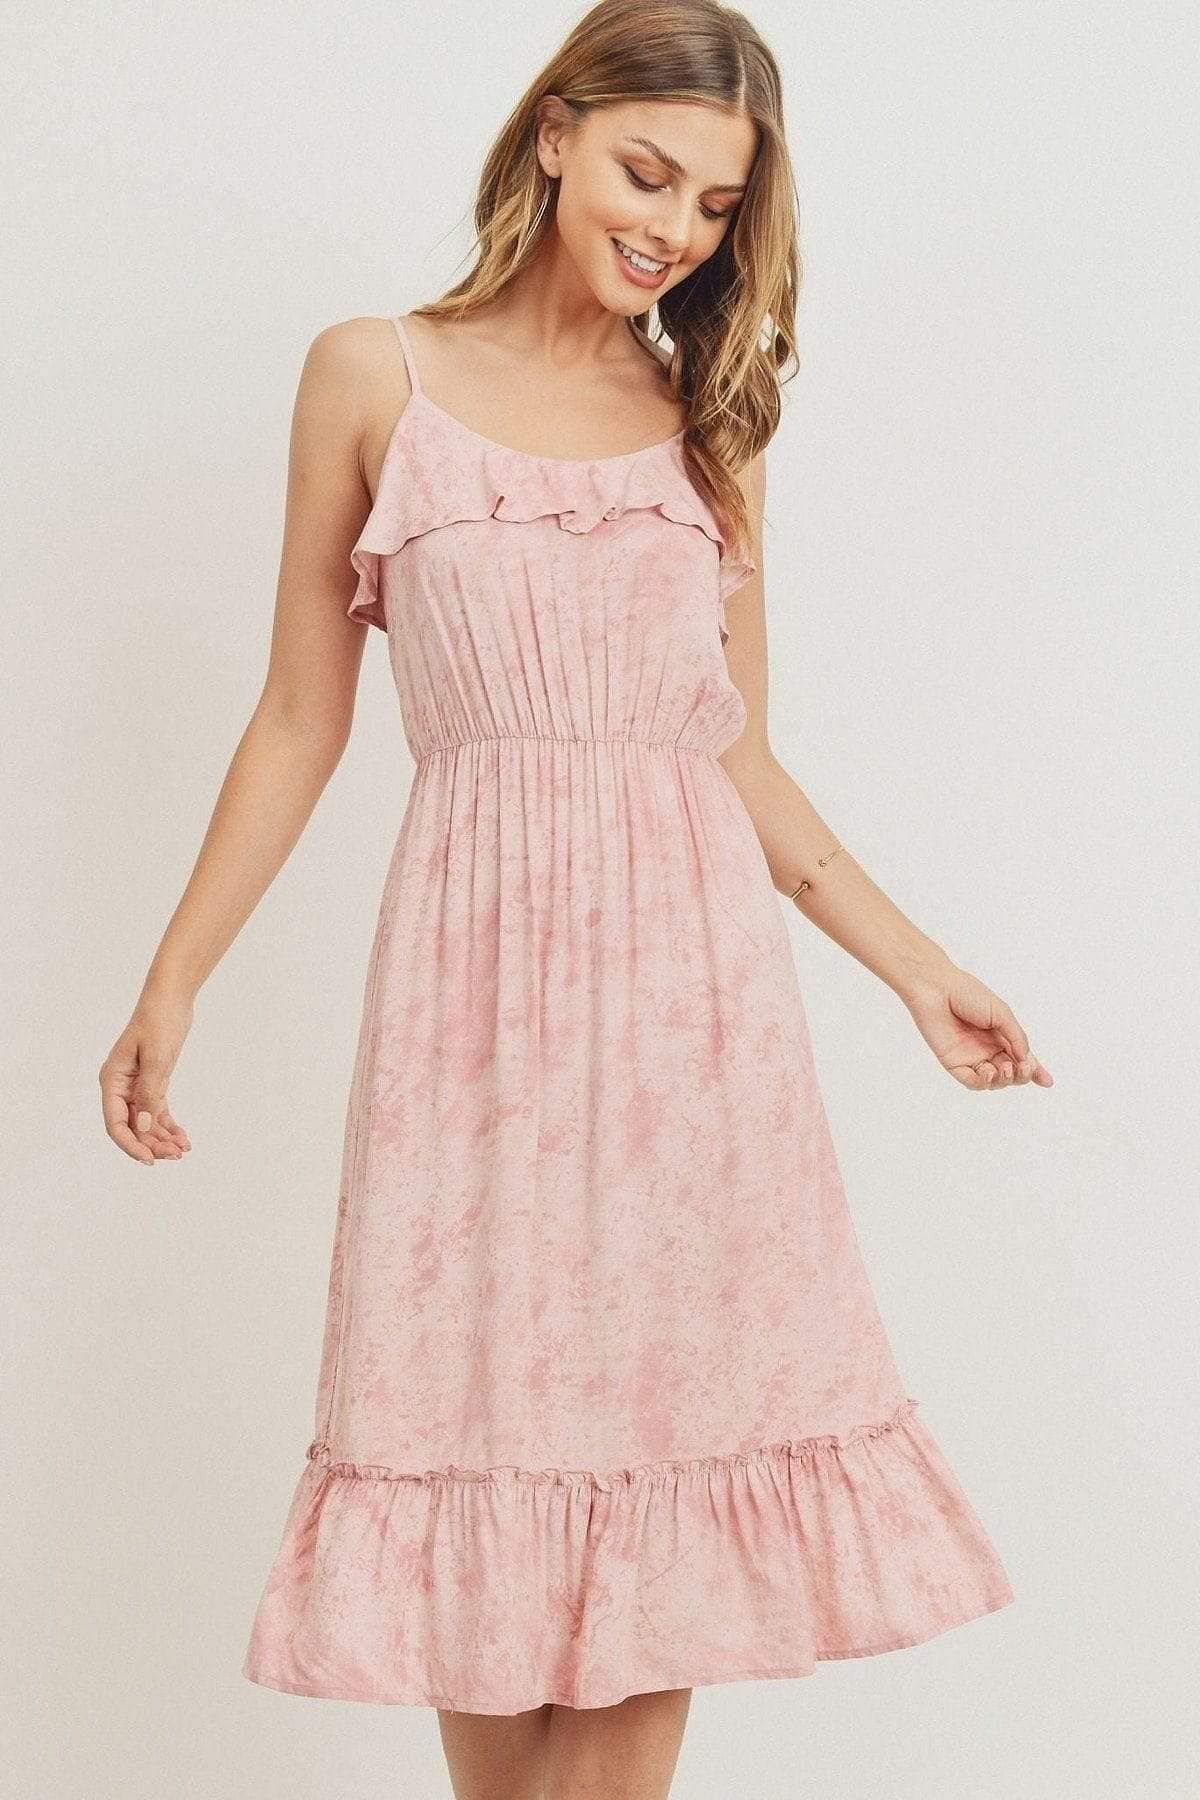 Pink Spaghetti Strap Ruffle Midi Dress - Shopping Therapy M dress